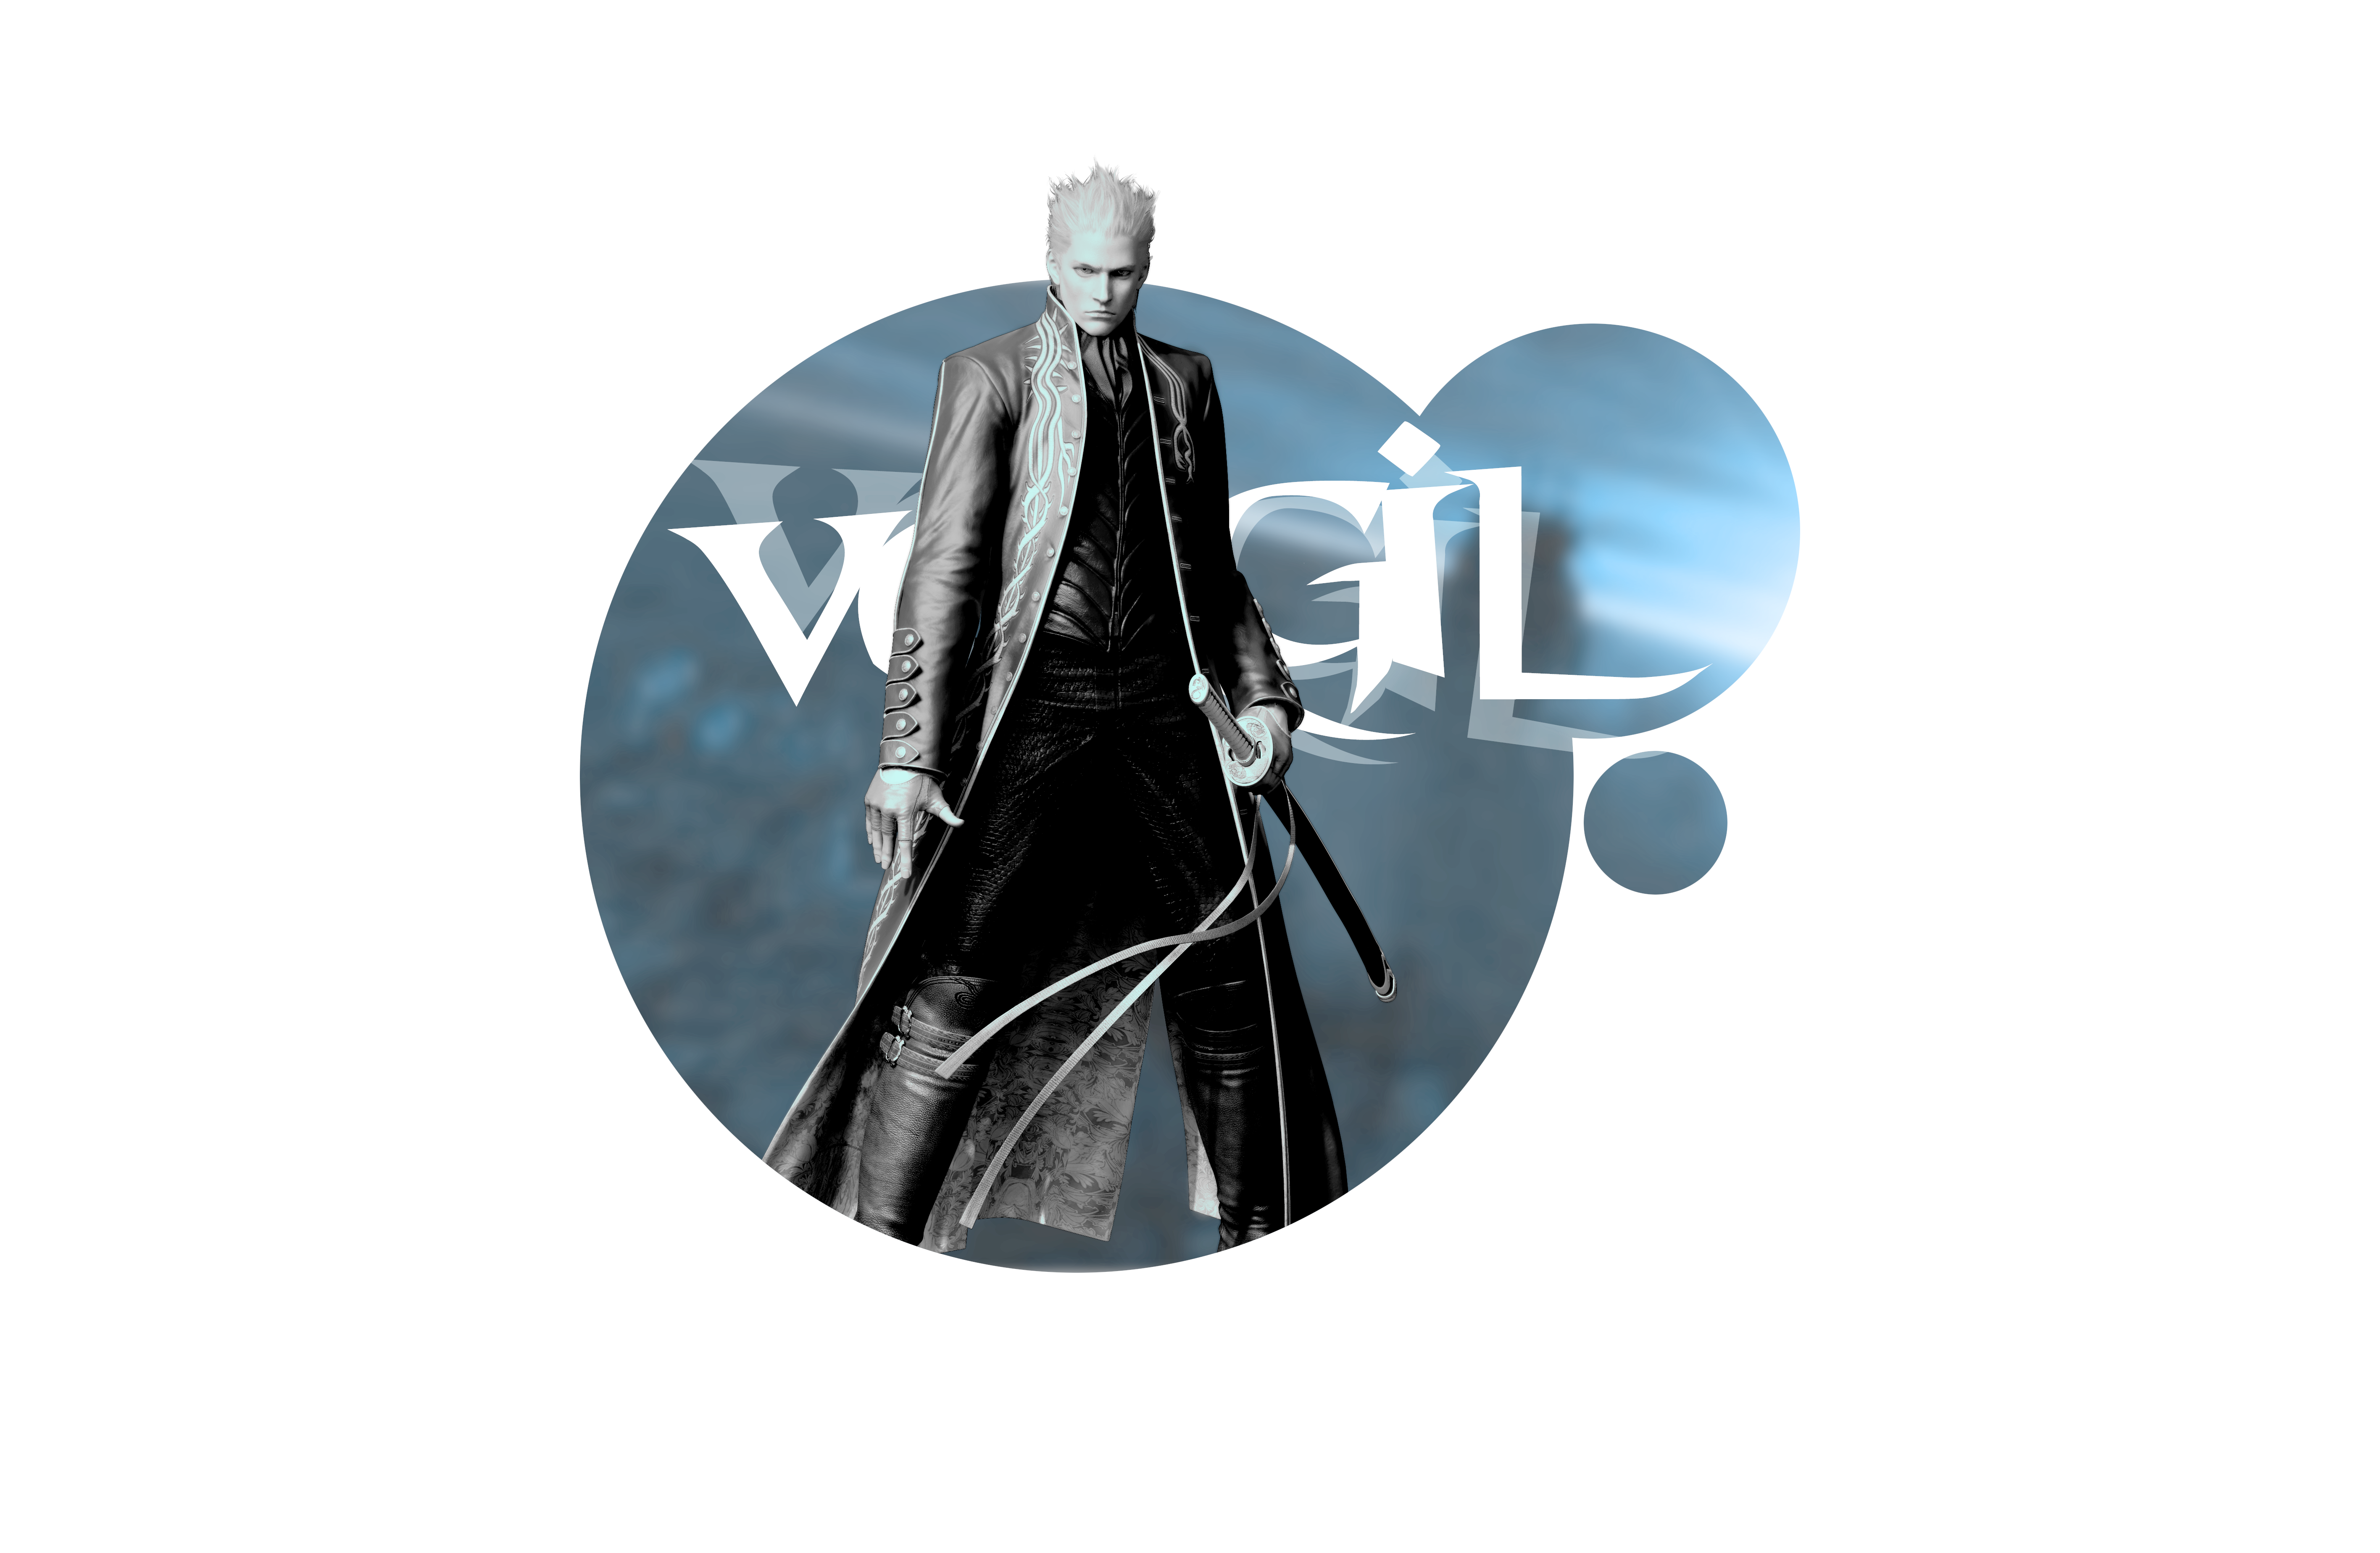 Devil May Cry 5 Vergil Screen Render PNG by VigoorDesigns on DeviantArt